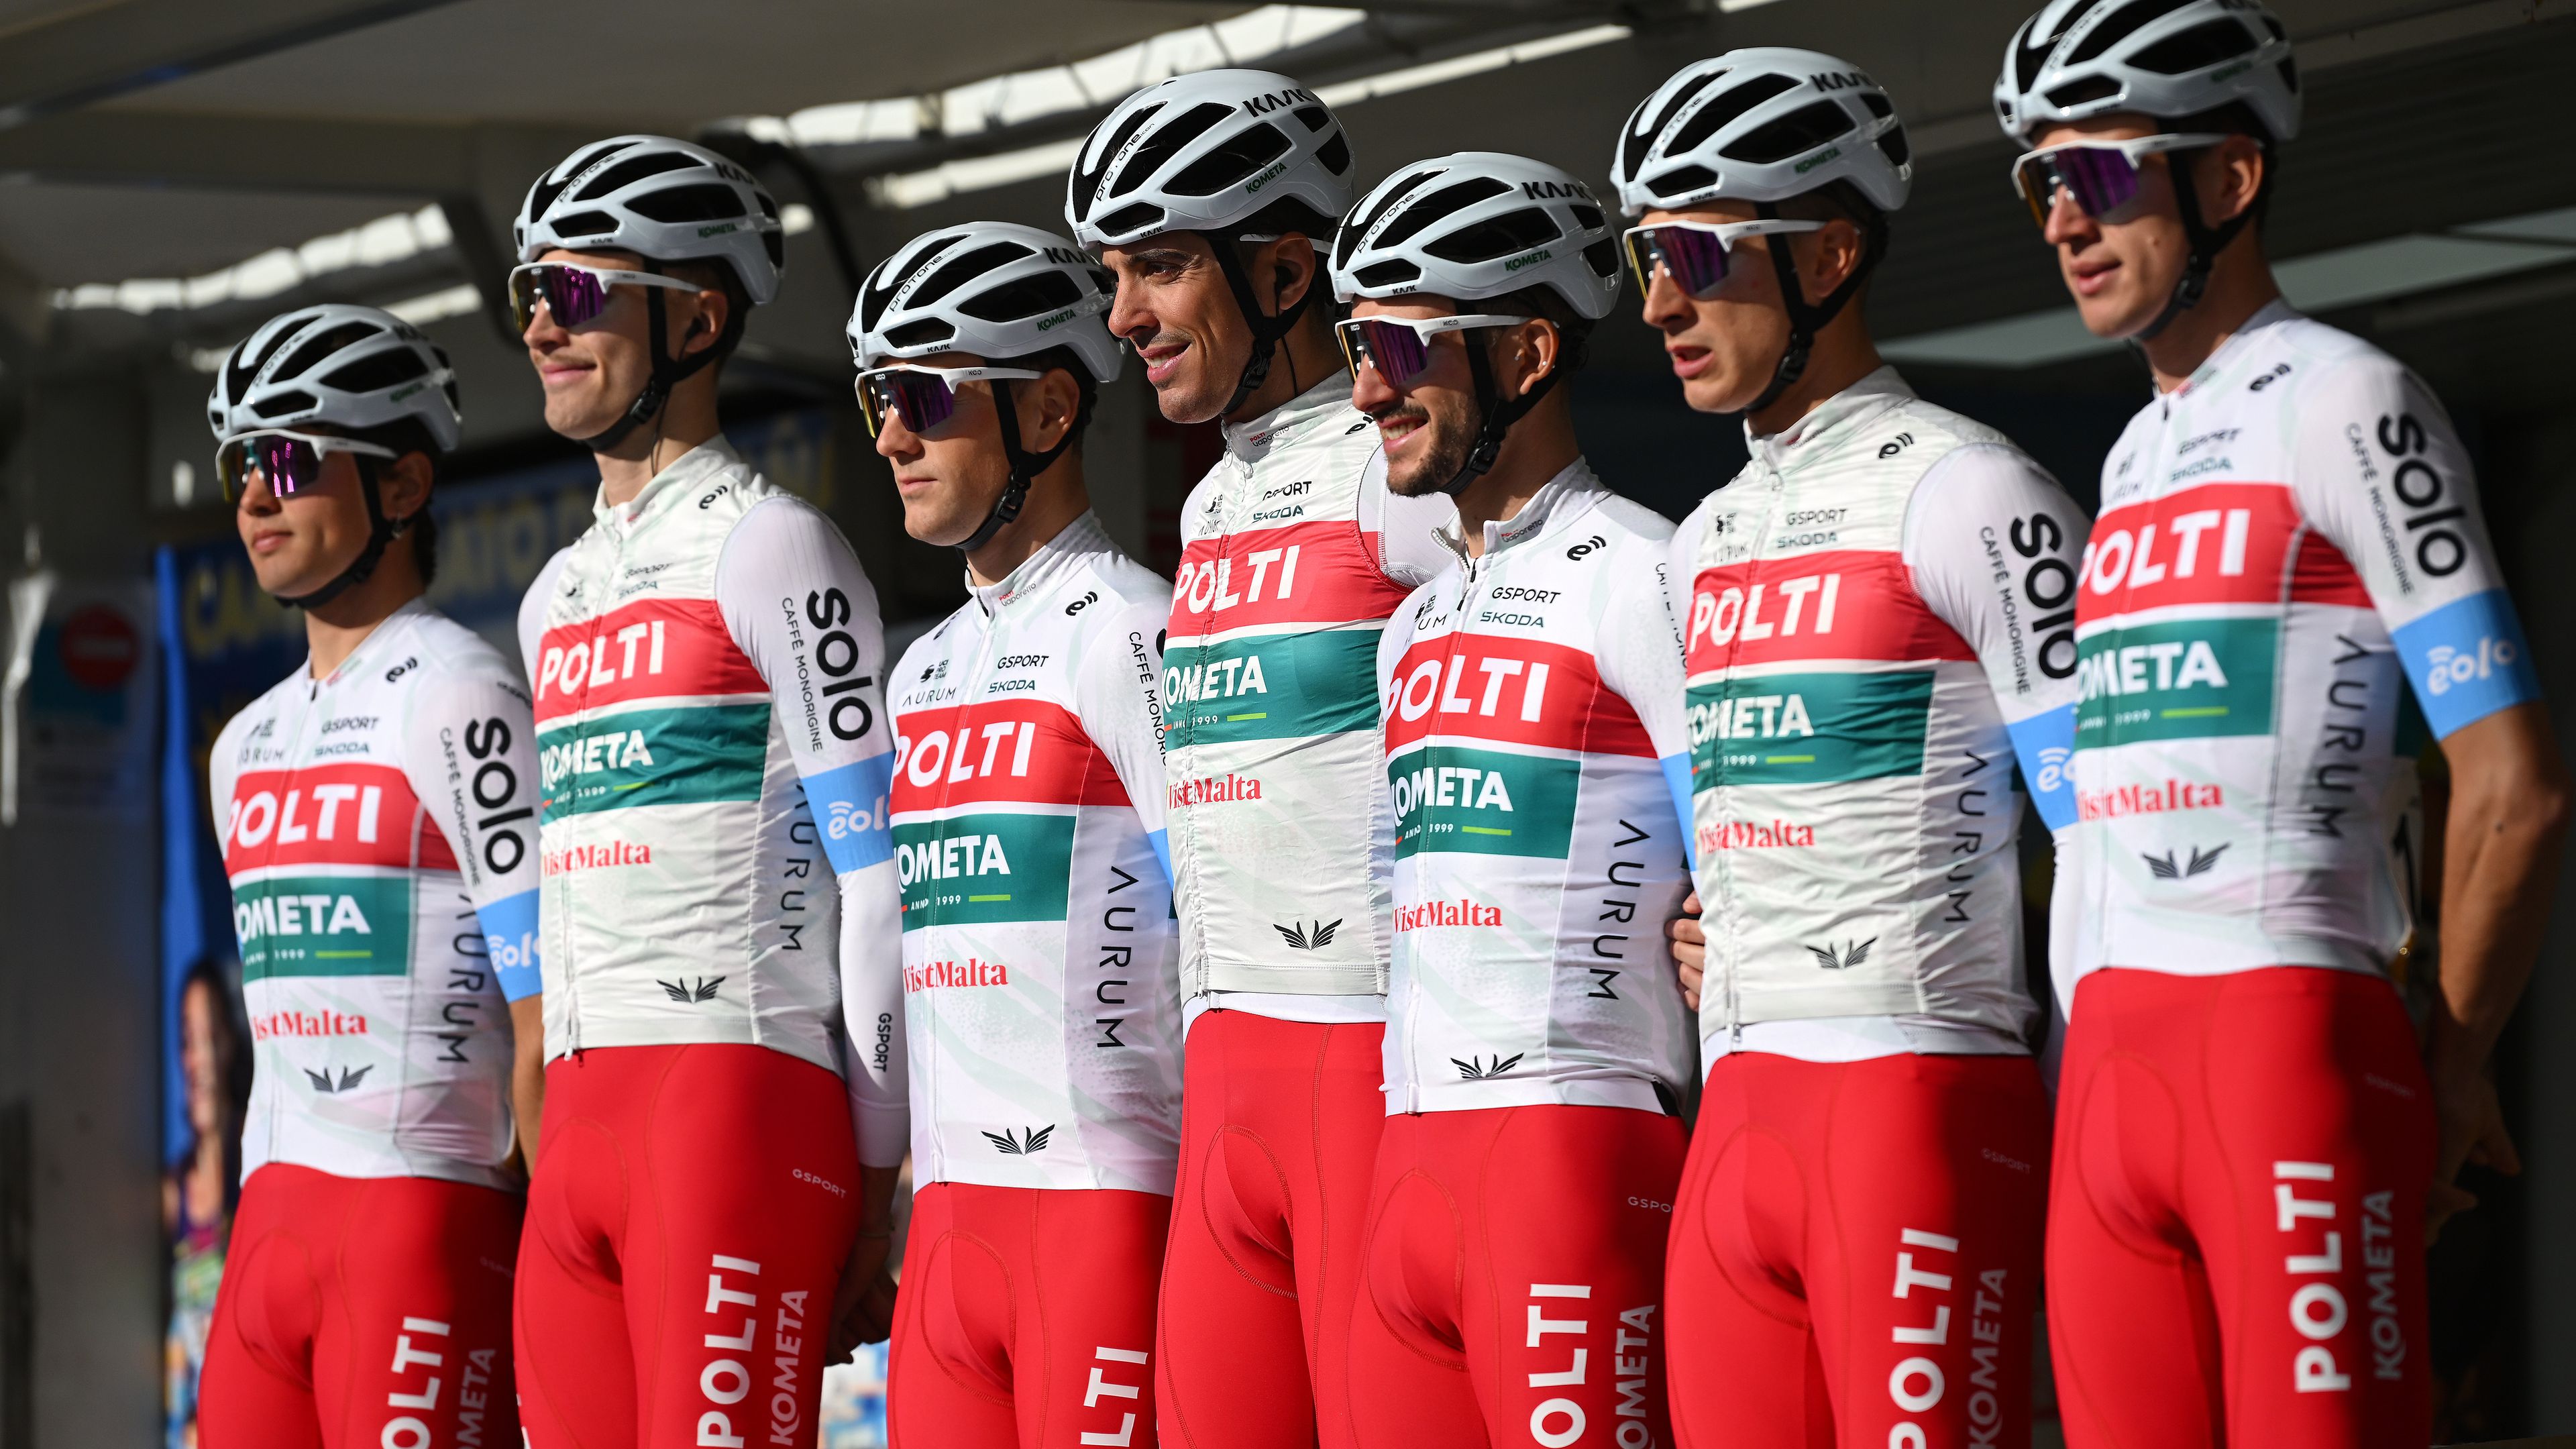 A magyar kerékpáros csapata szabadkártyát kapott a Giro d’Italiára